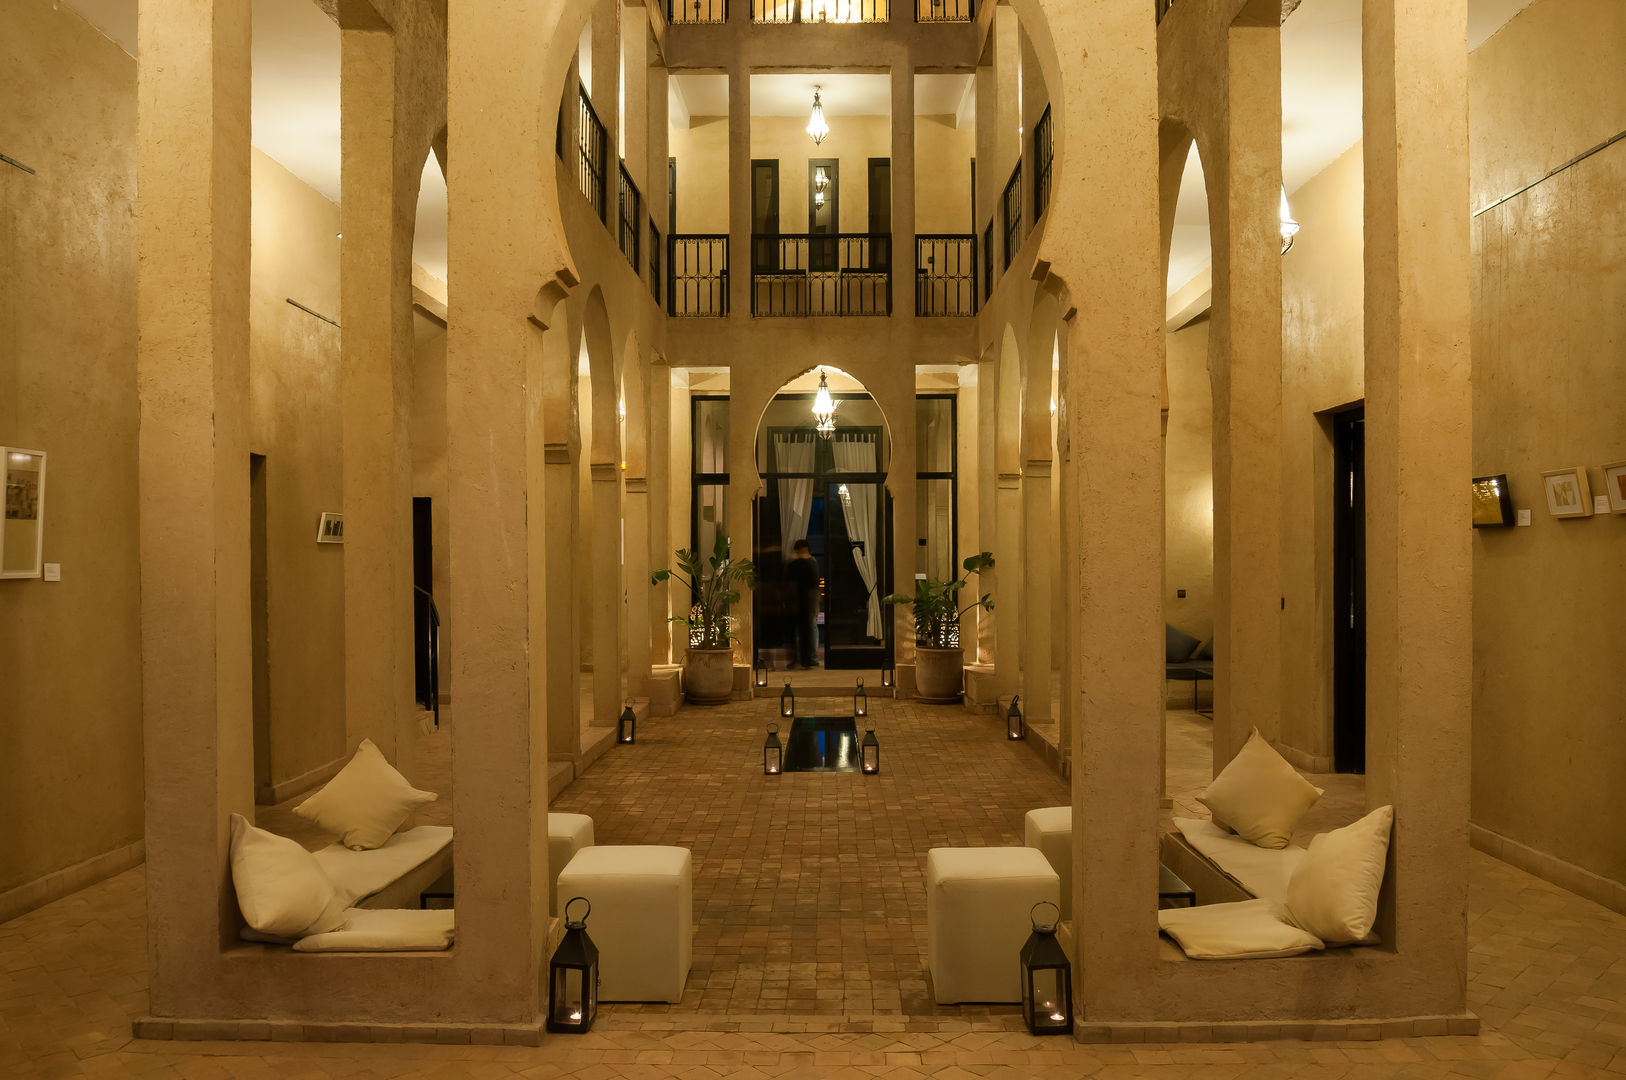 Hotel en Marruecos, Space Maker Studio Space Maker Studio Powierzchnie handlowe